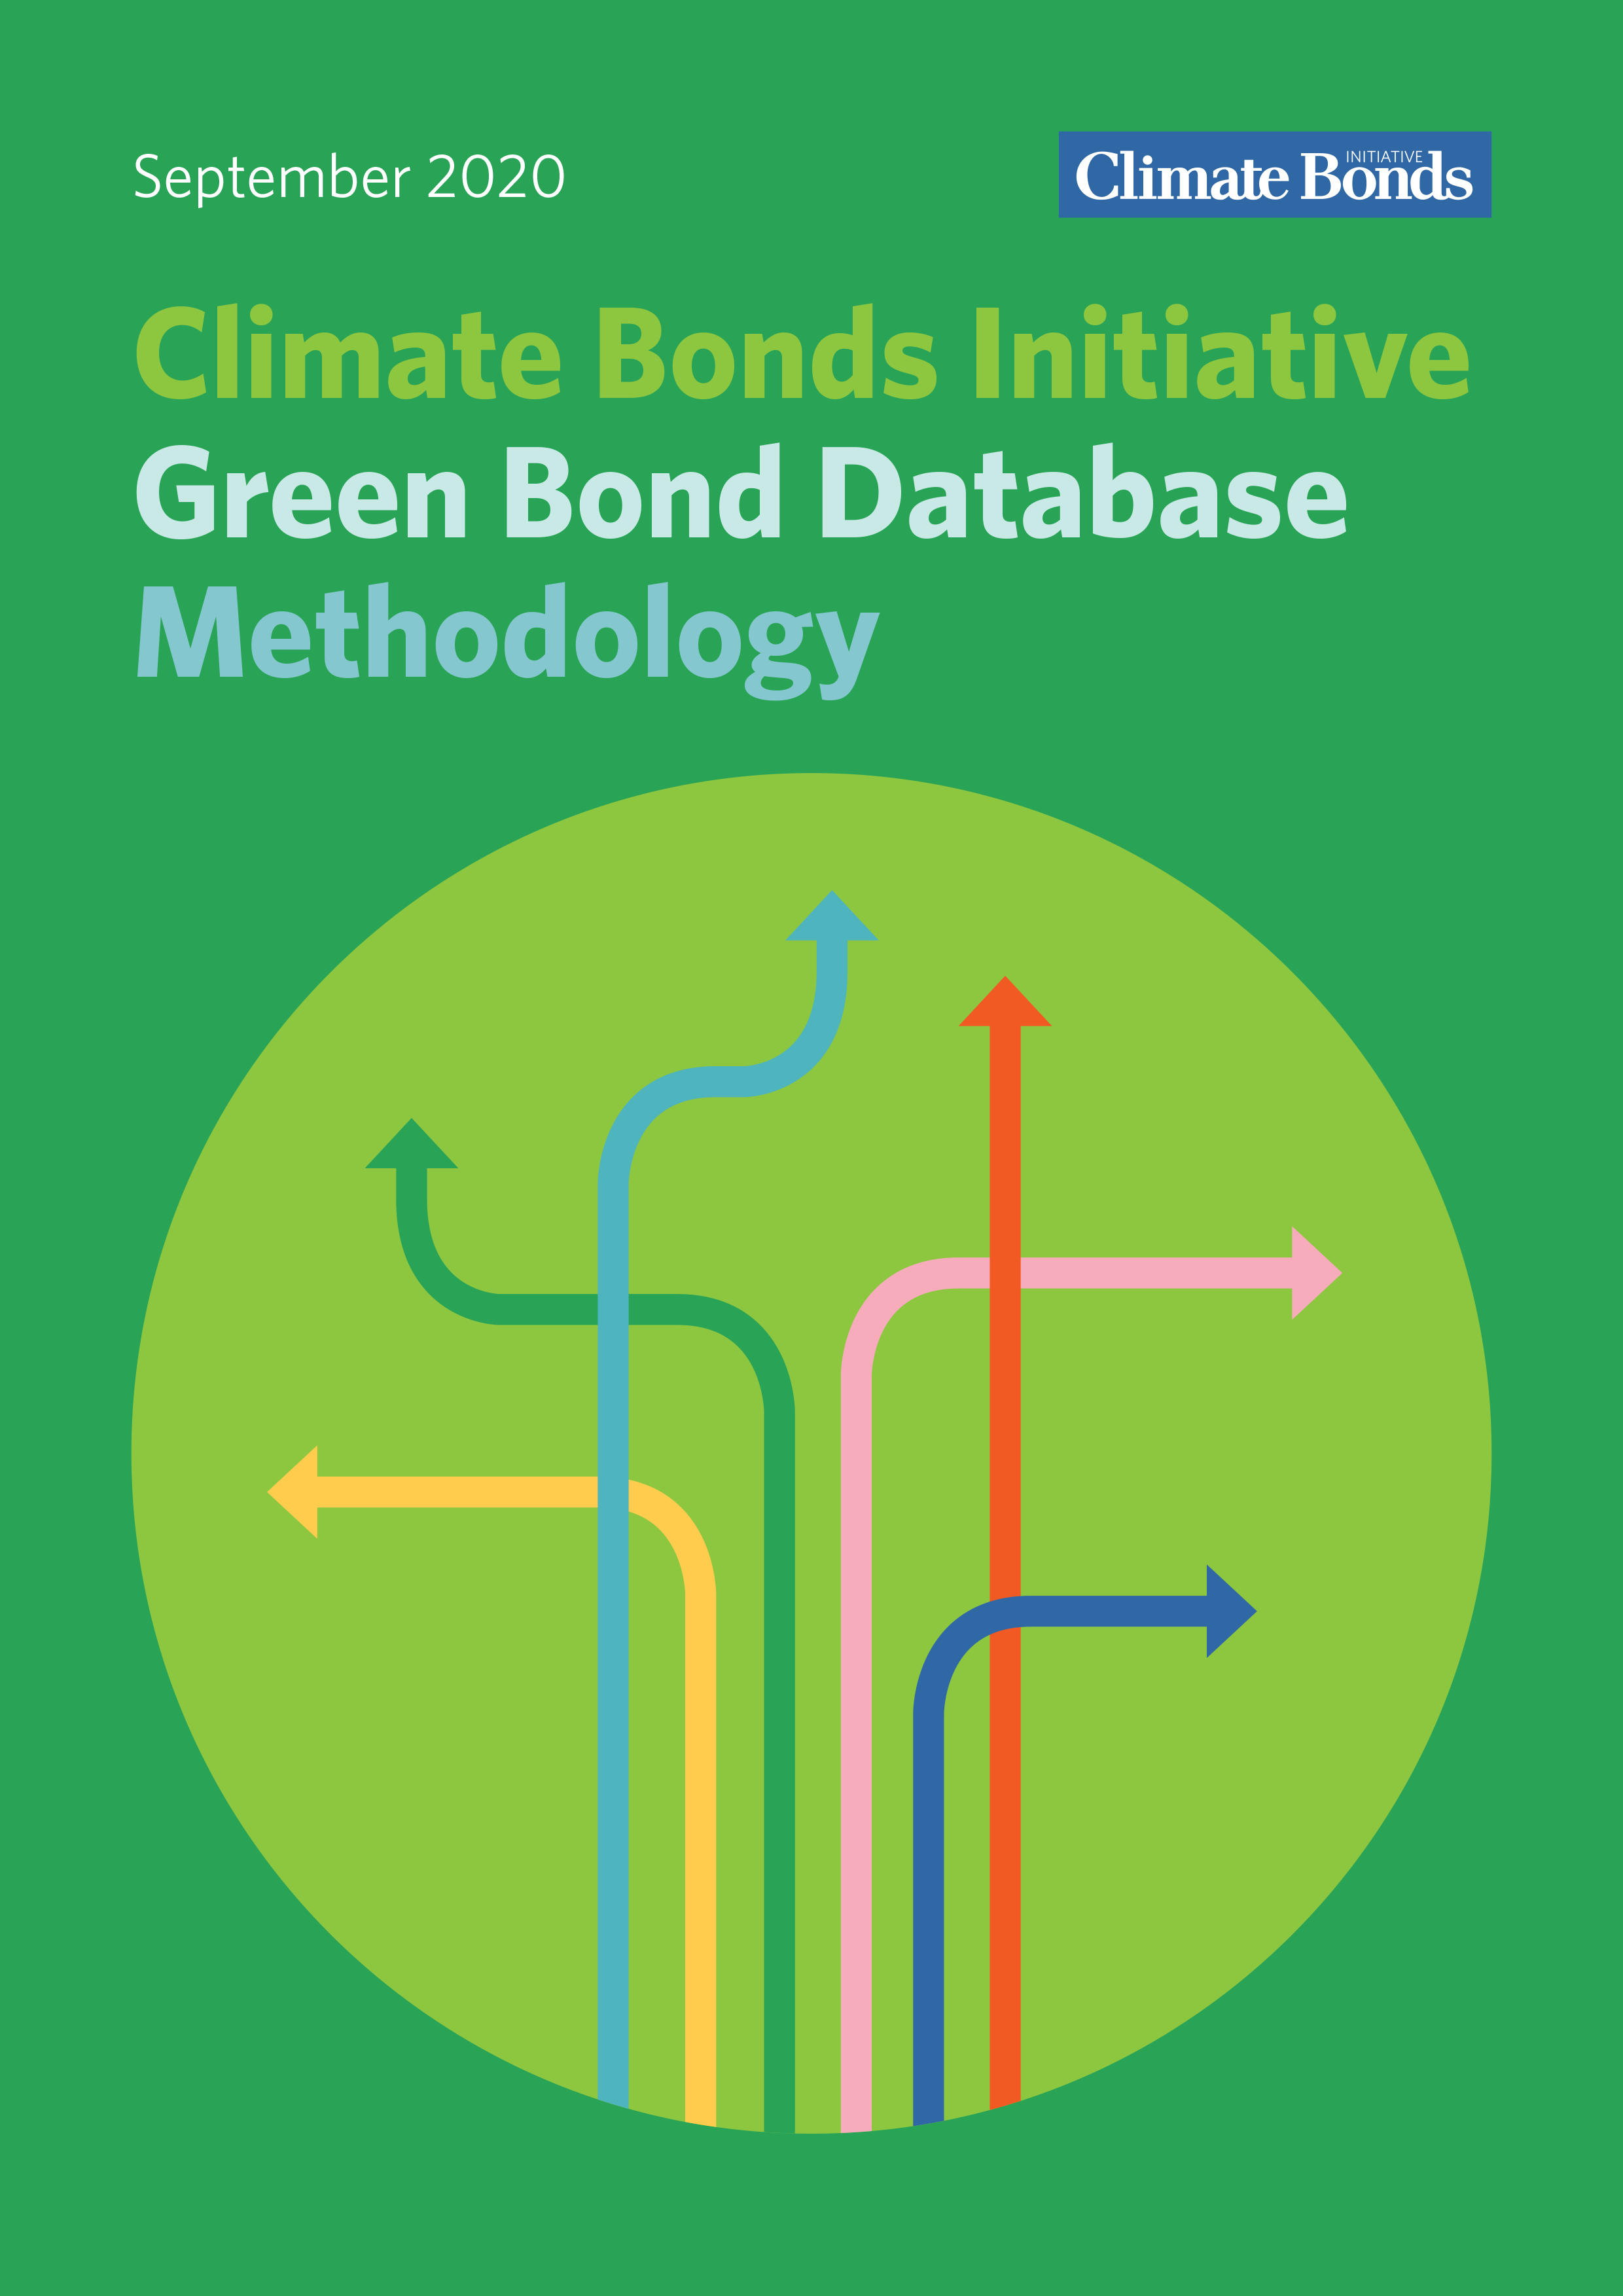 Green Bond Database Methodology